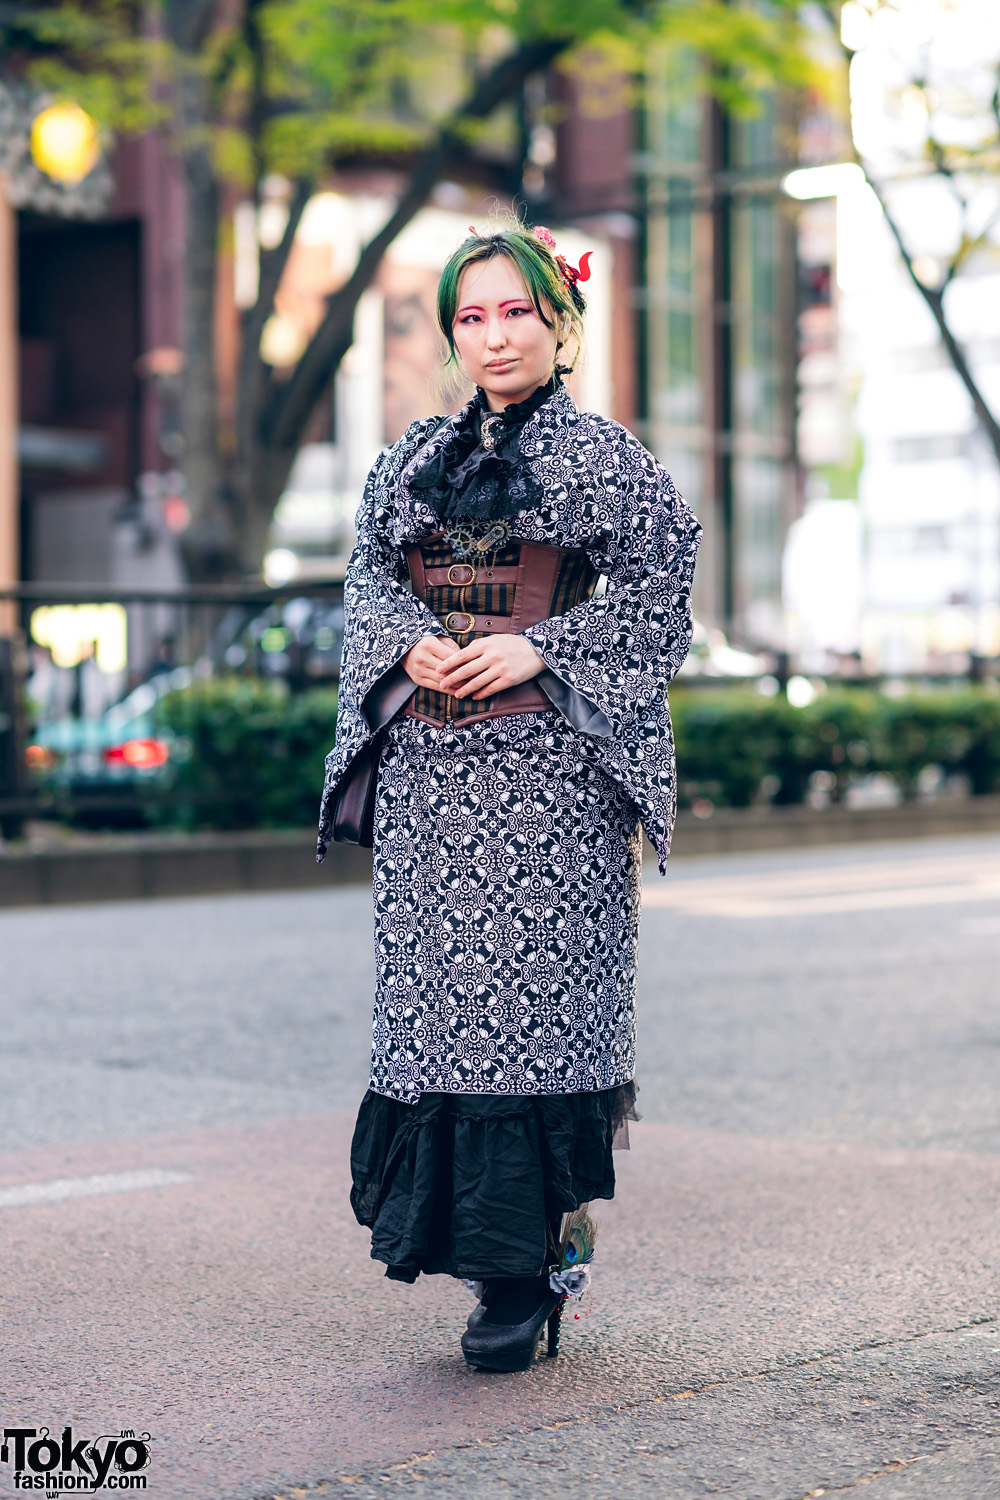 Kimono Style w/ Steampunk Accents, Corset Belt, Lace Cravat, Harry Potter Satchel Bag & Embellished Platform Pumps